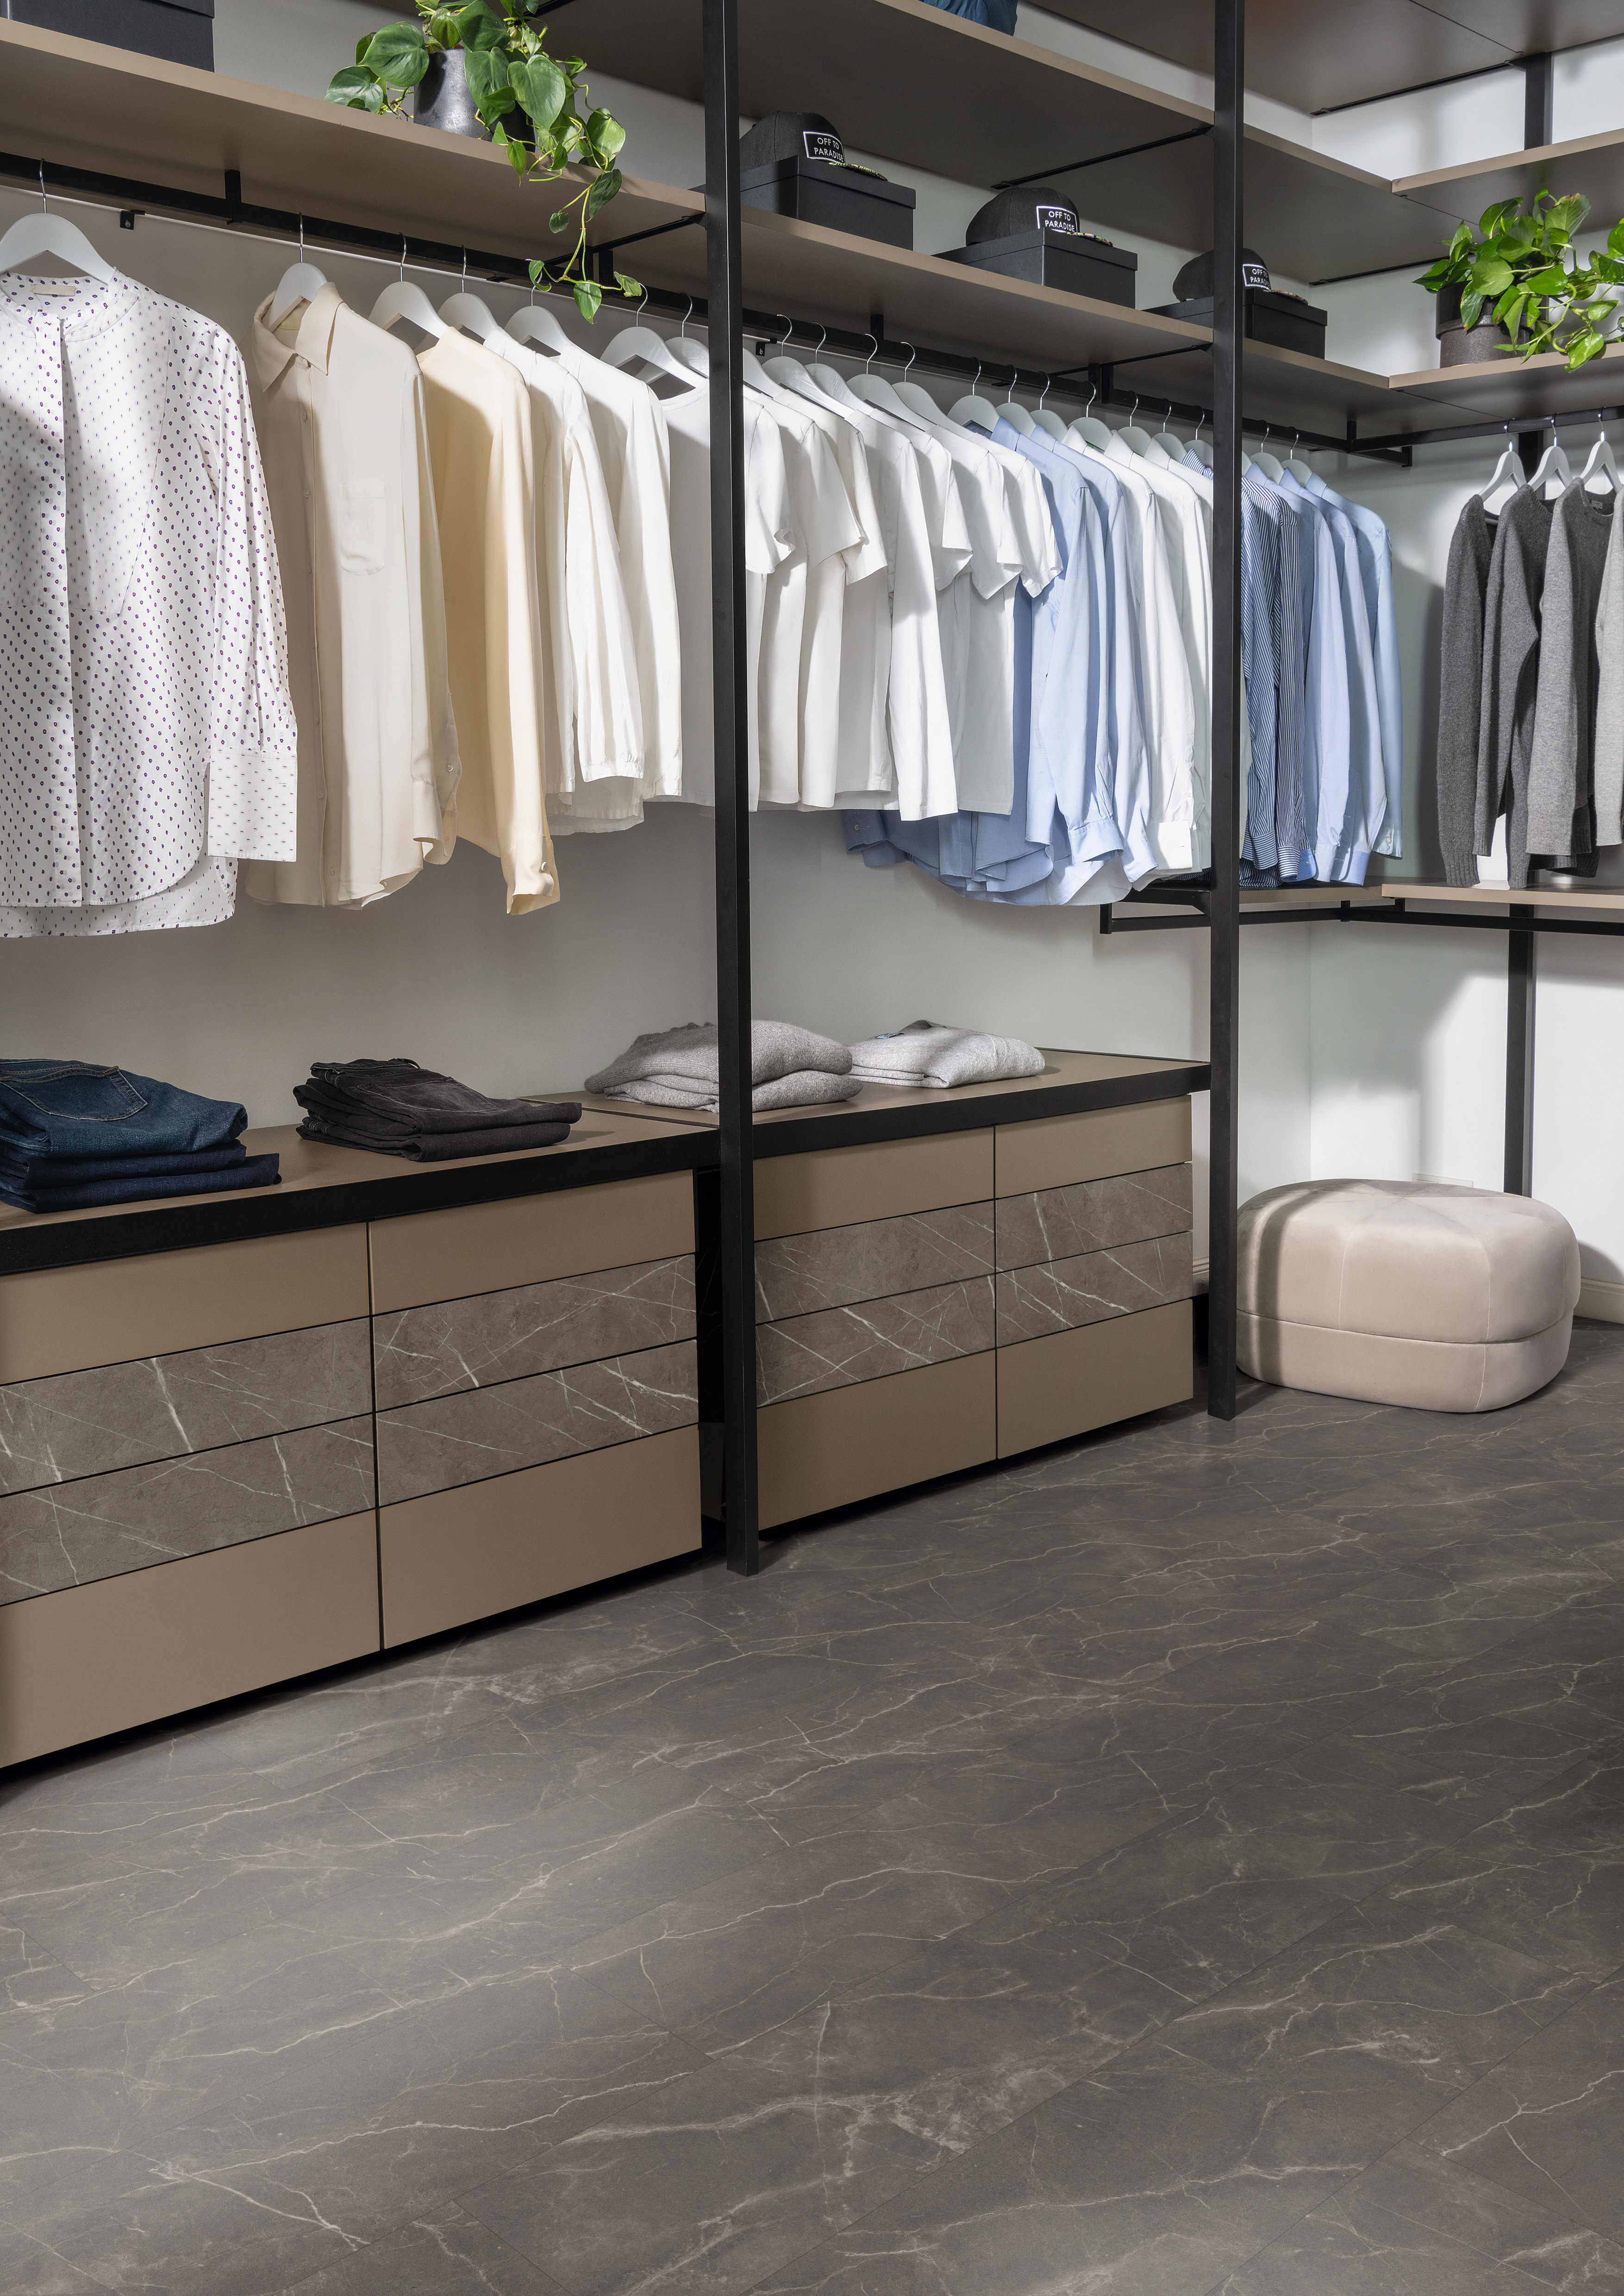 色彩搭配的商店：碳黑意大利石板和帕里尼灰色大理石。 抽屉正面：Eurodekor 双饰面板 | 地板： Design GreenTec 地板